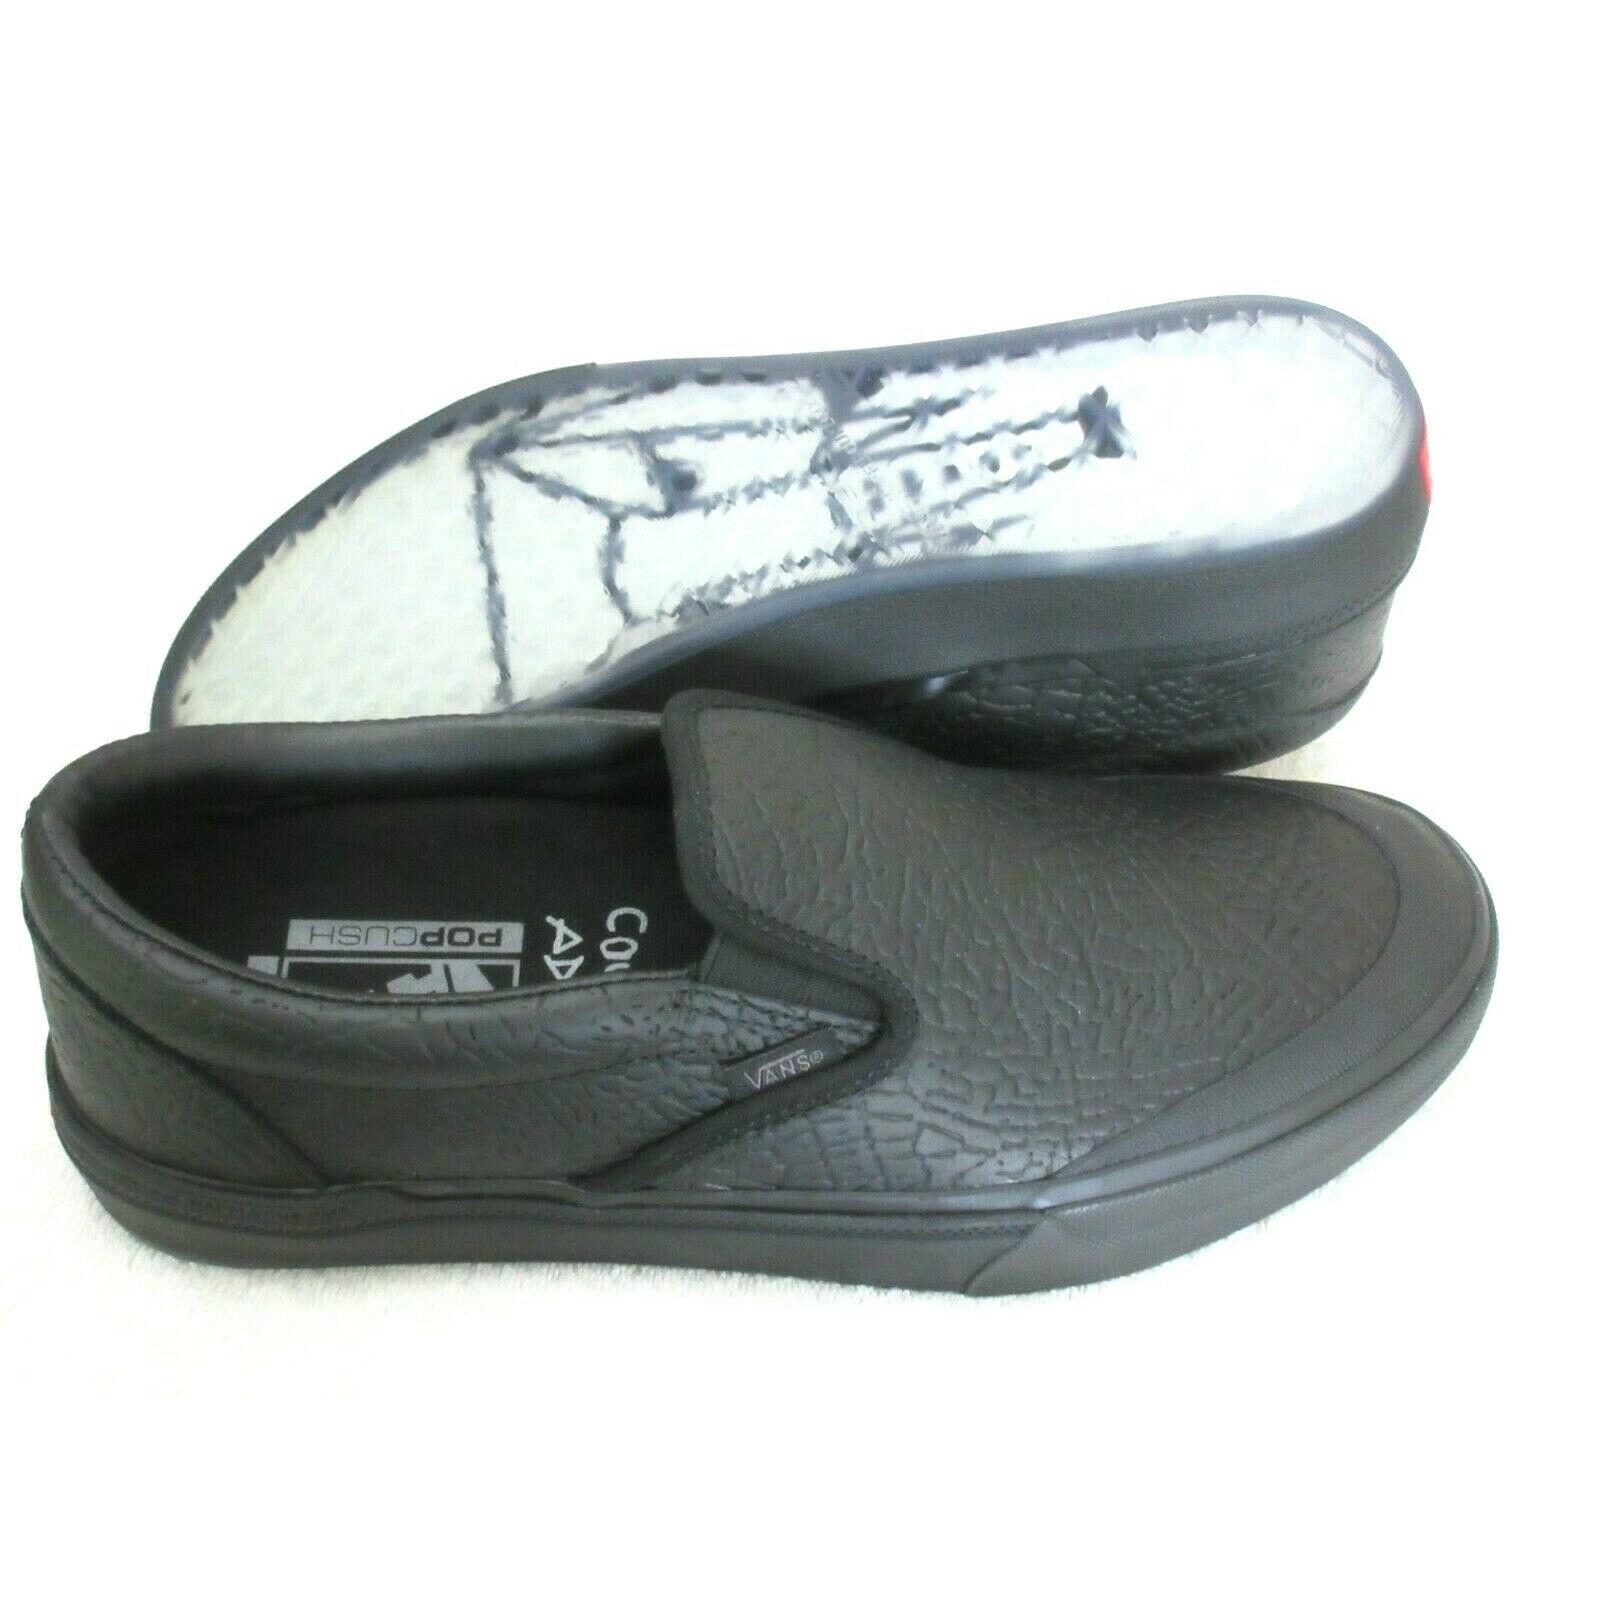 Vans Men`s Bmx Slip-on Courage Adams Black Elephant Suede Shoes Size 10.5